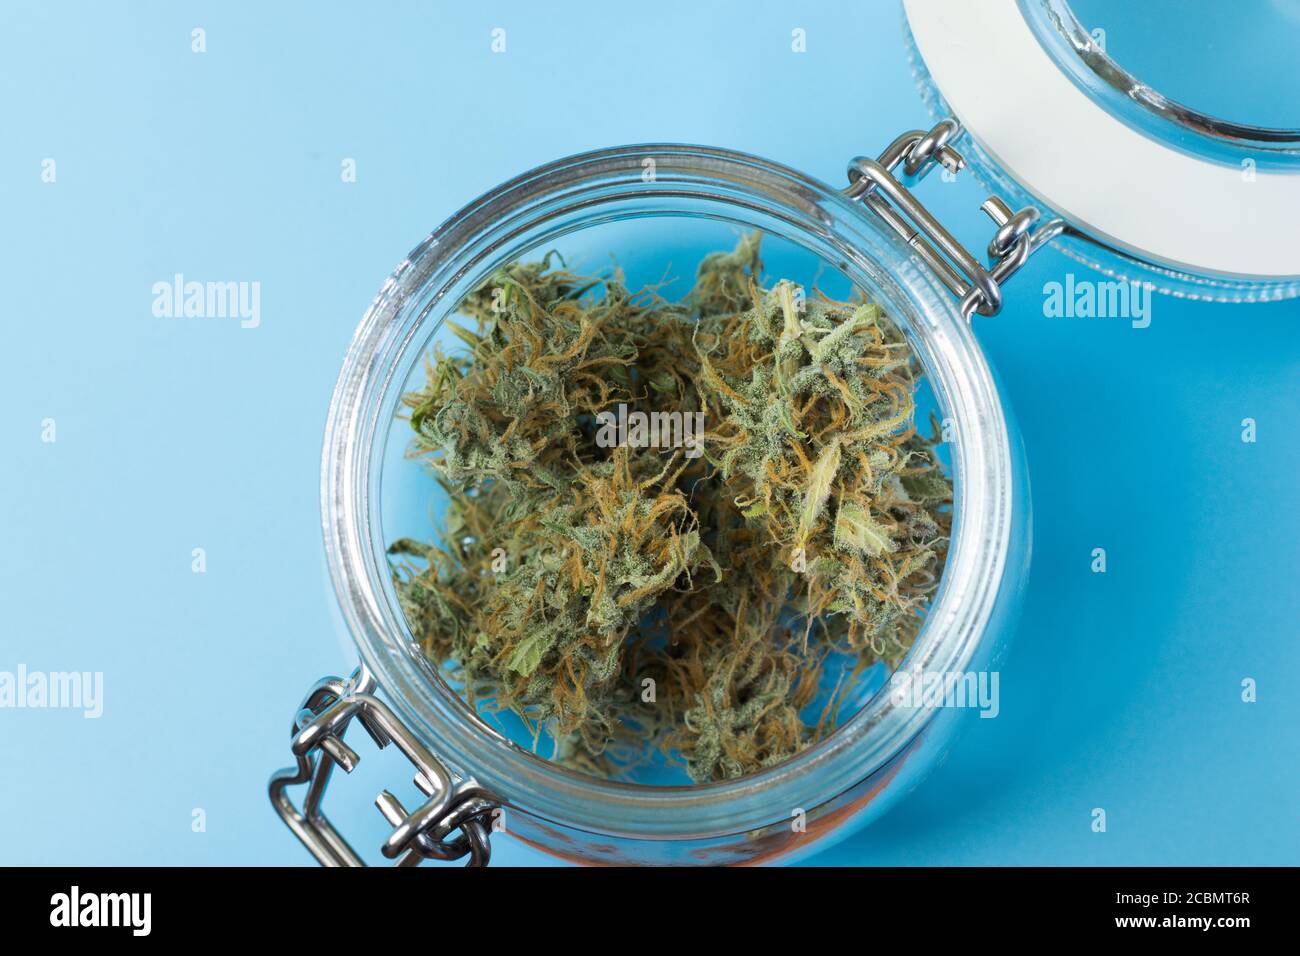 Vista dall'alto della cannabis in primo piano, vaso di vetro con marijuana per il trattamento medico Foto Stock